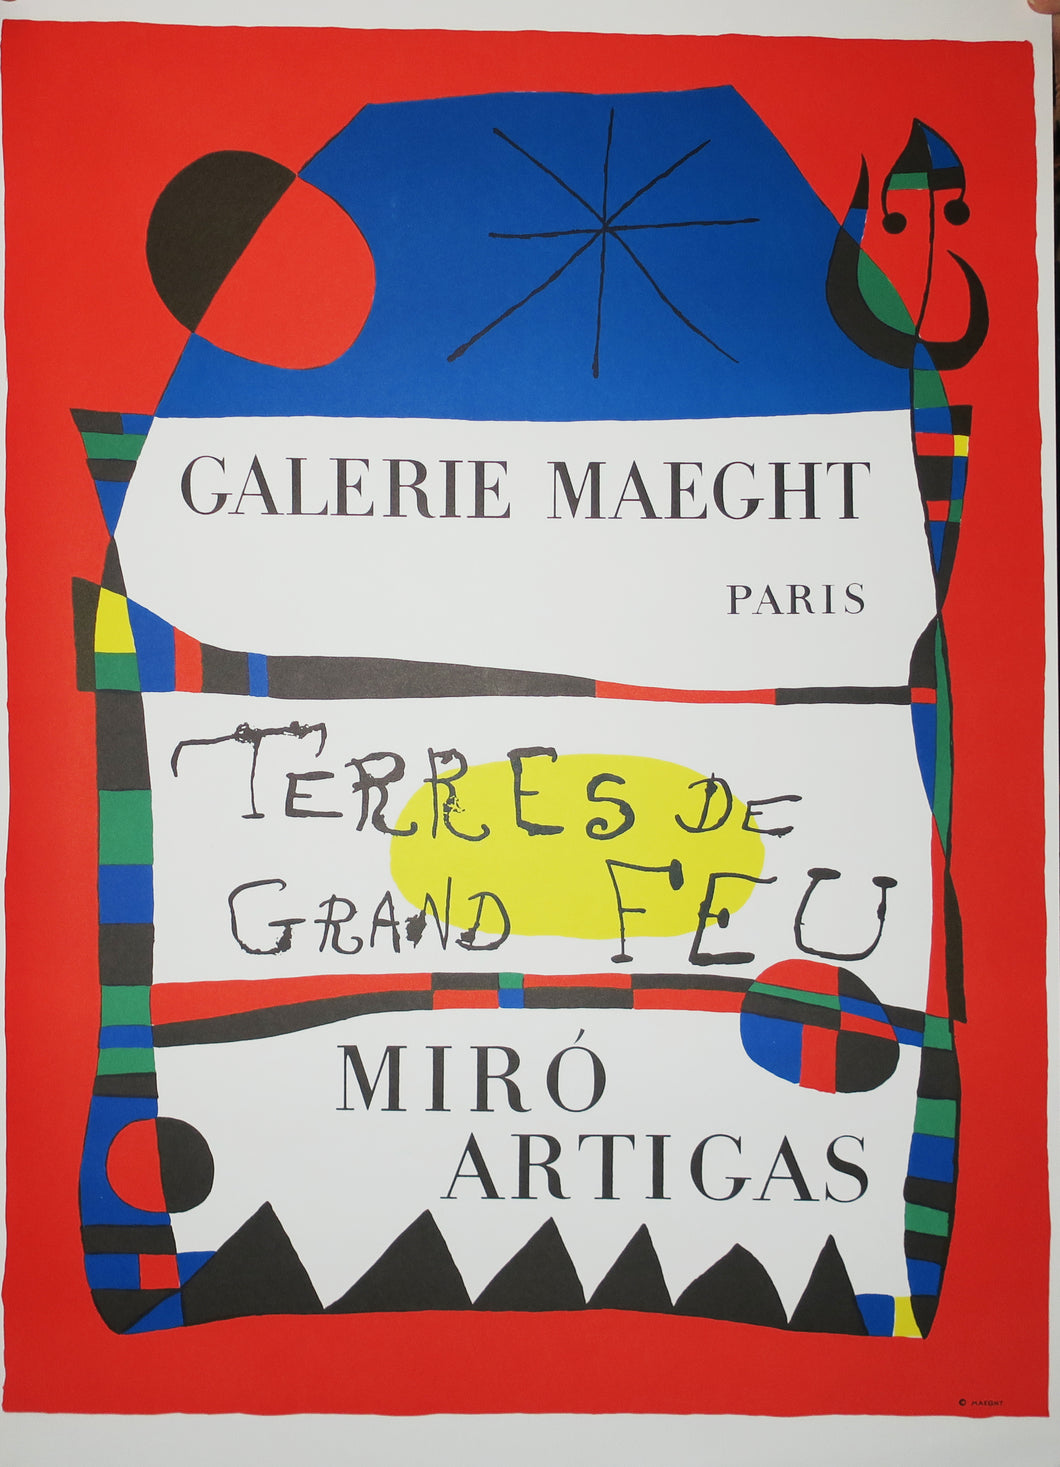 Galerie Maeght, Paris. Terres de grand Feu. Miro artigas.  1956.